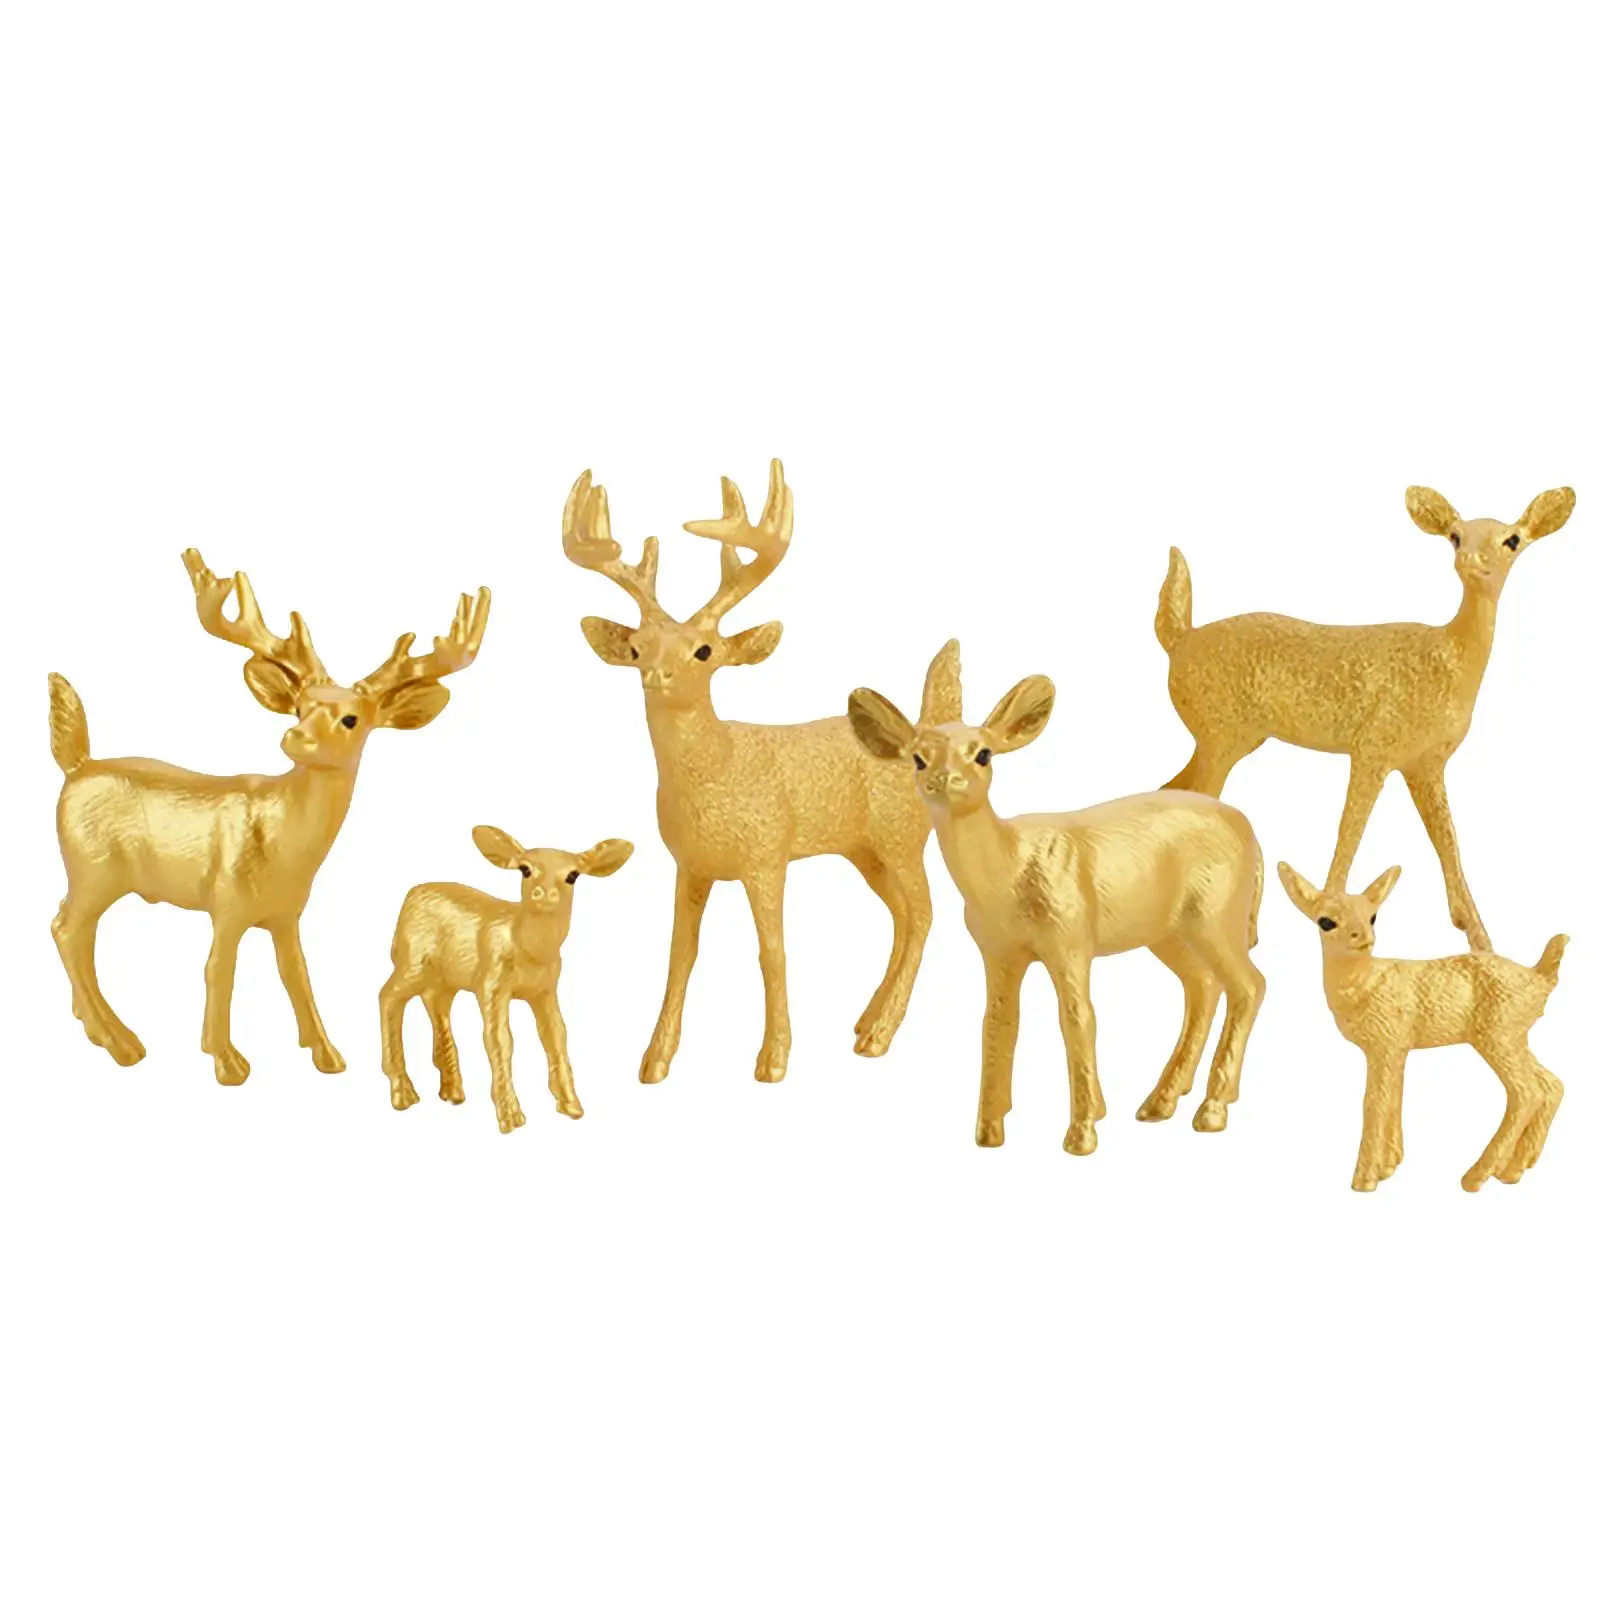 6 Pieces Miniature Deer Model for DIY Projects Props Kindergarten Girls Boys